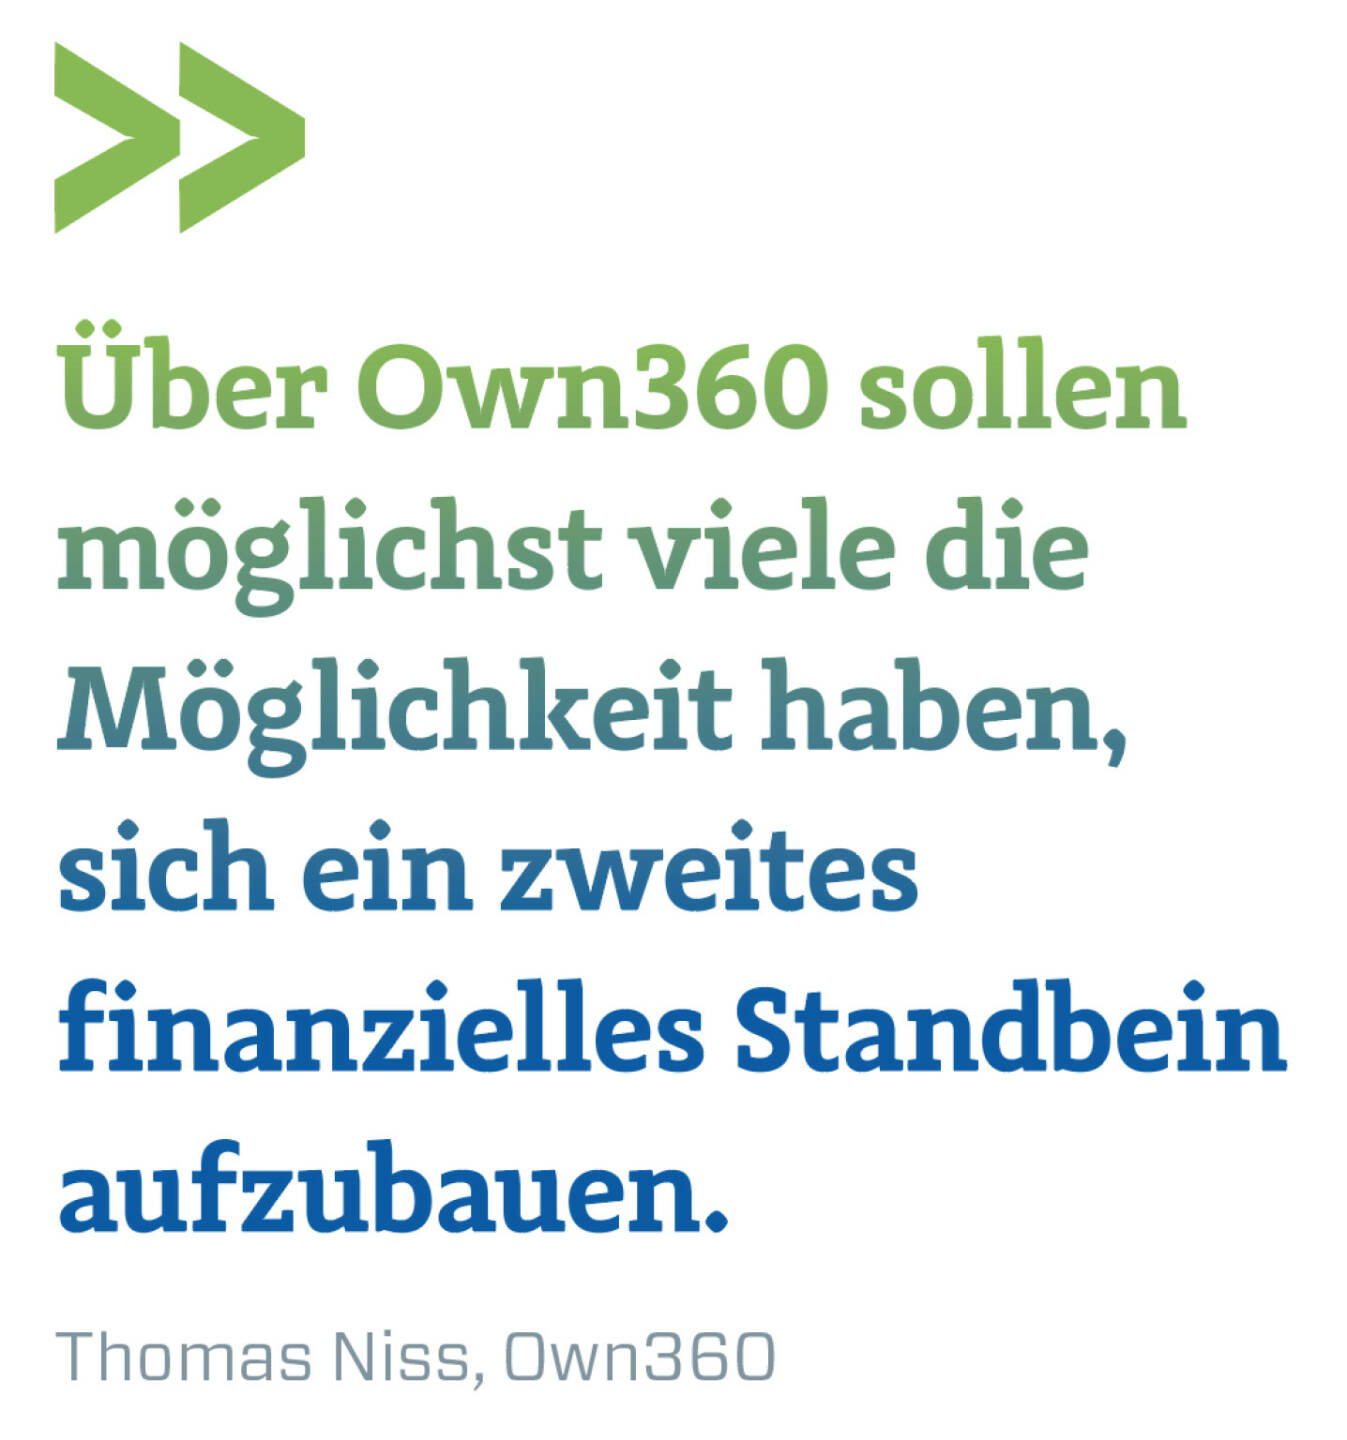 Über Own360 sollen möglichst viele die Möglichkeit haben, sich ein zweites finanzielles Standbein aufzubauen.
Thomas Niss, Own360